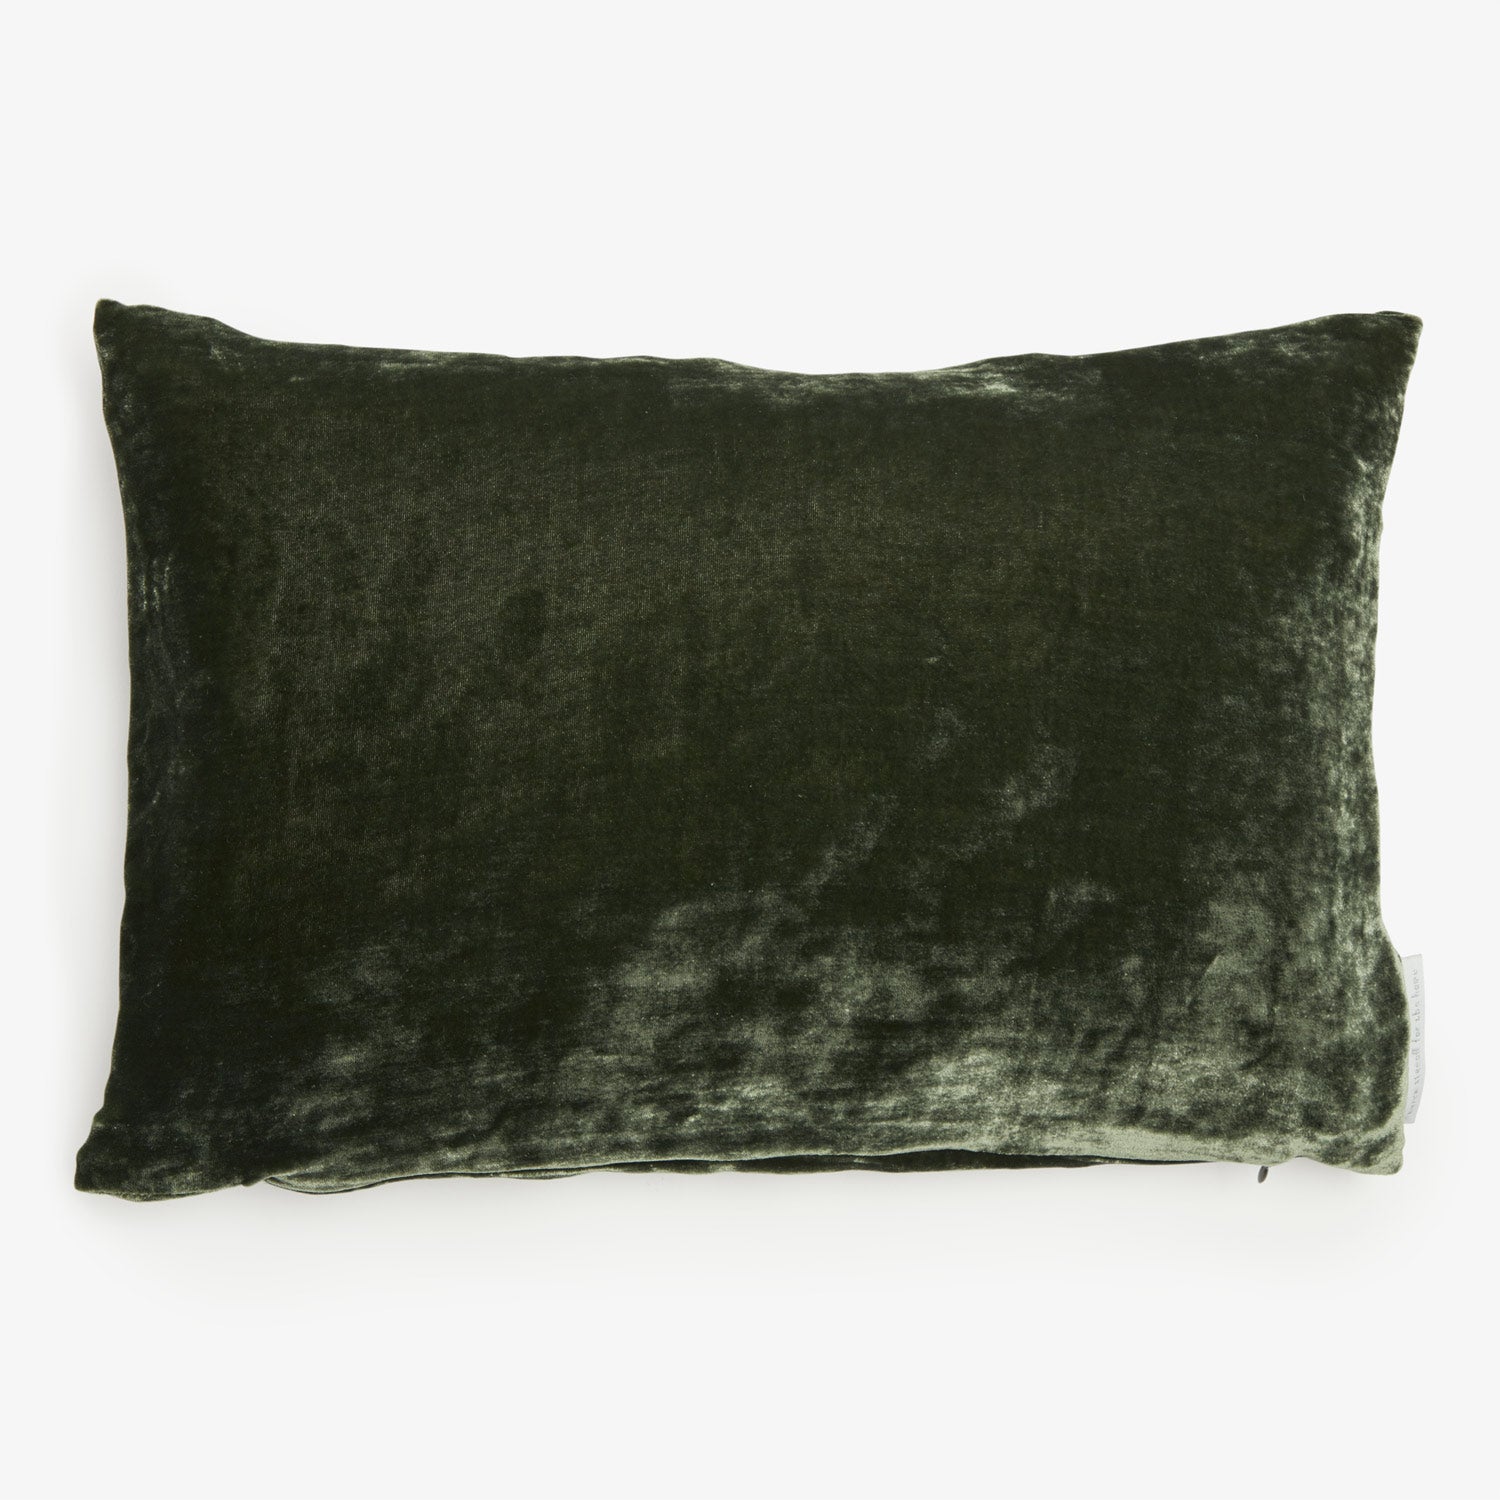 Rectangular dark green velvet pillow 